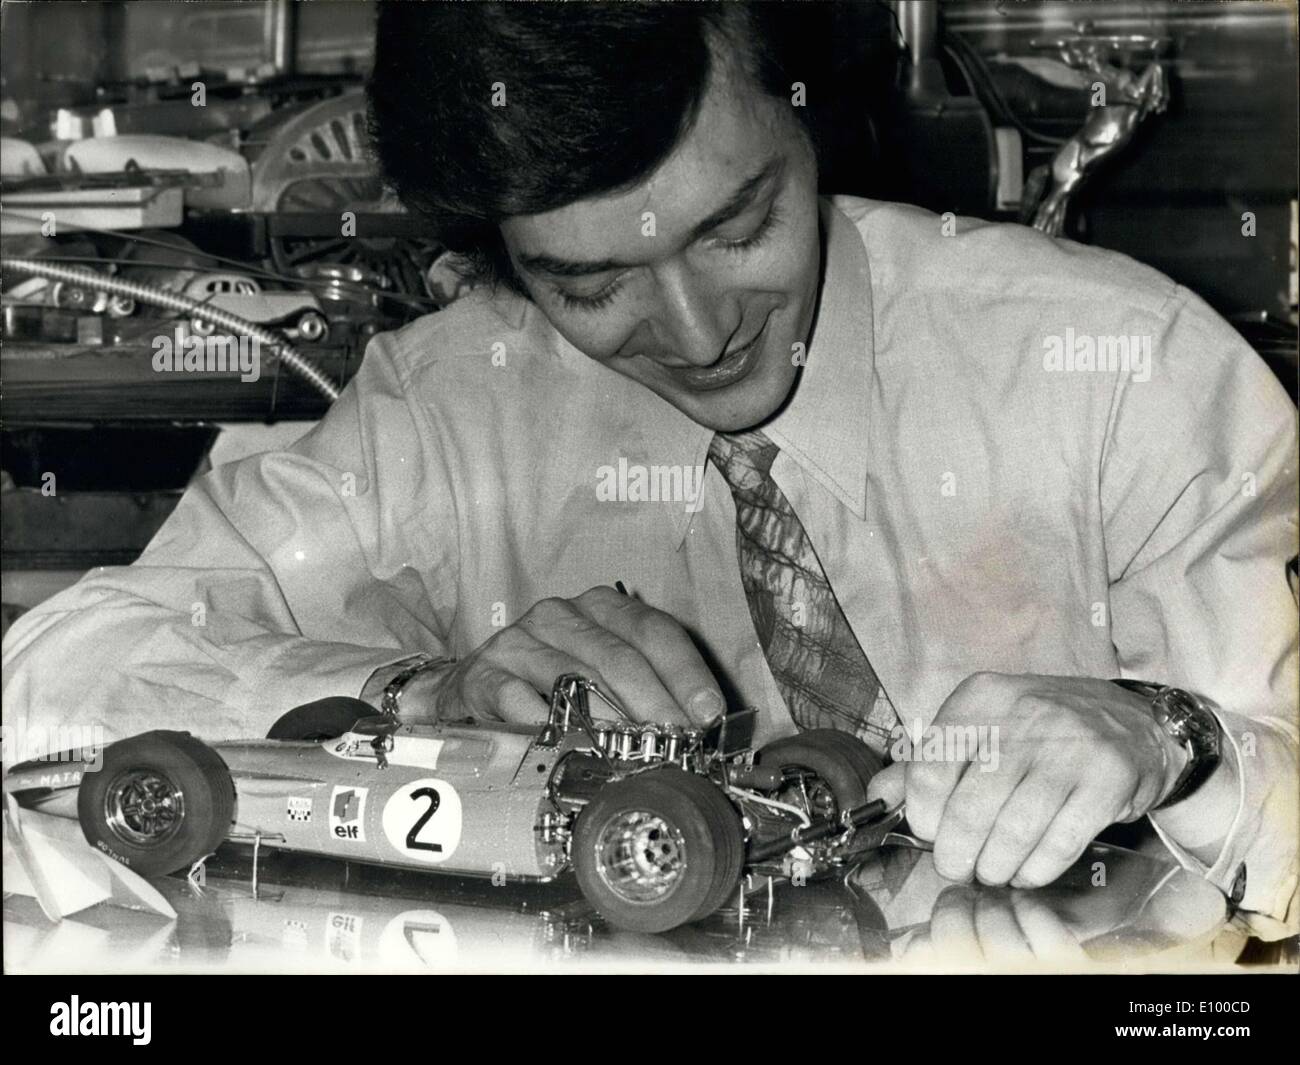 11 gennaio 1972 - Christian Huet è solo 27 anni, ma una esposizione di arte ha già presentato 14 delle sue creazioni. Un appassionato di auto, Christian Huet costruisce vero delle riproduzioni delle più belle e vetture più veloci al mondo. Ogni creazione, che è del tutto unico e richiede in media da 450 a 800 ore di lavoro. L'attenzione al dettaglio e l'autenticità rende il suo modello auto magnifica ''giocattoli'' che non sono accessibili a tutti. Ciascuno dei costi 5,00a 6.000 franchi almeno . . . Il suo più noioso di modello è un trionfo Spitfire Mk 2 che ha avuto 2.000 ore per costruire Foto Stock